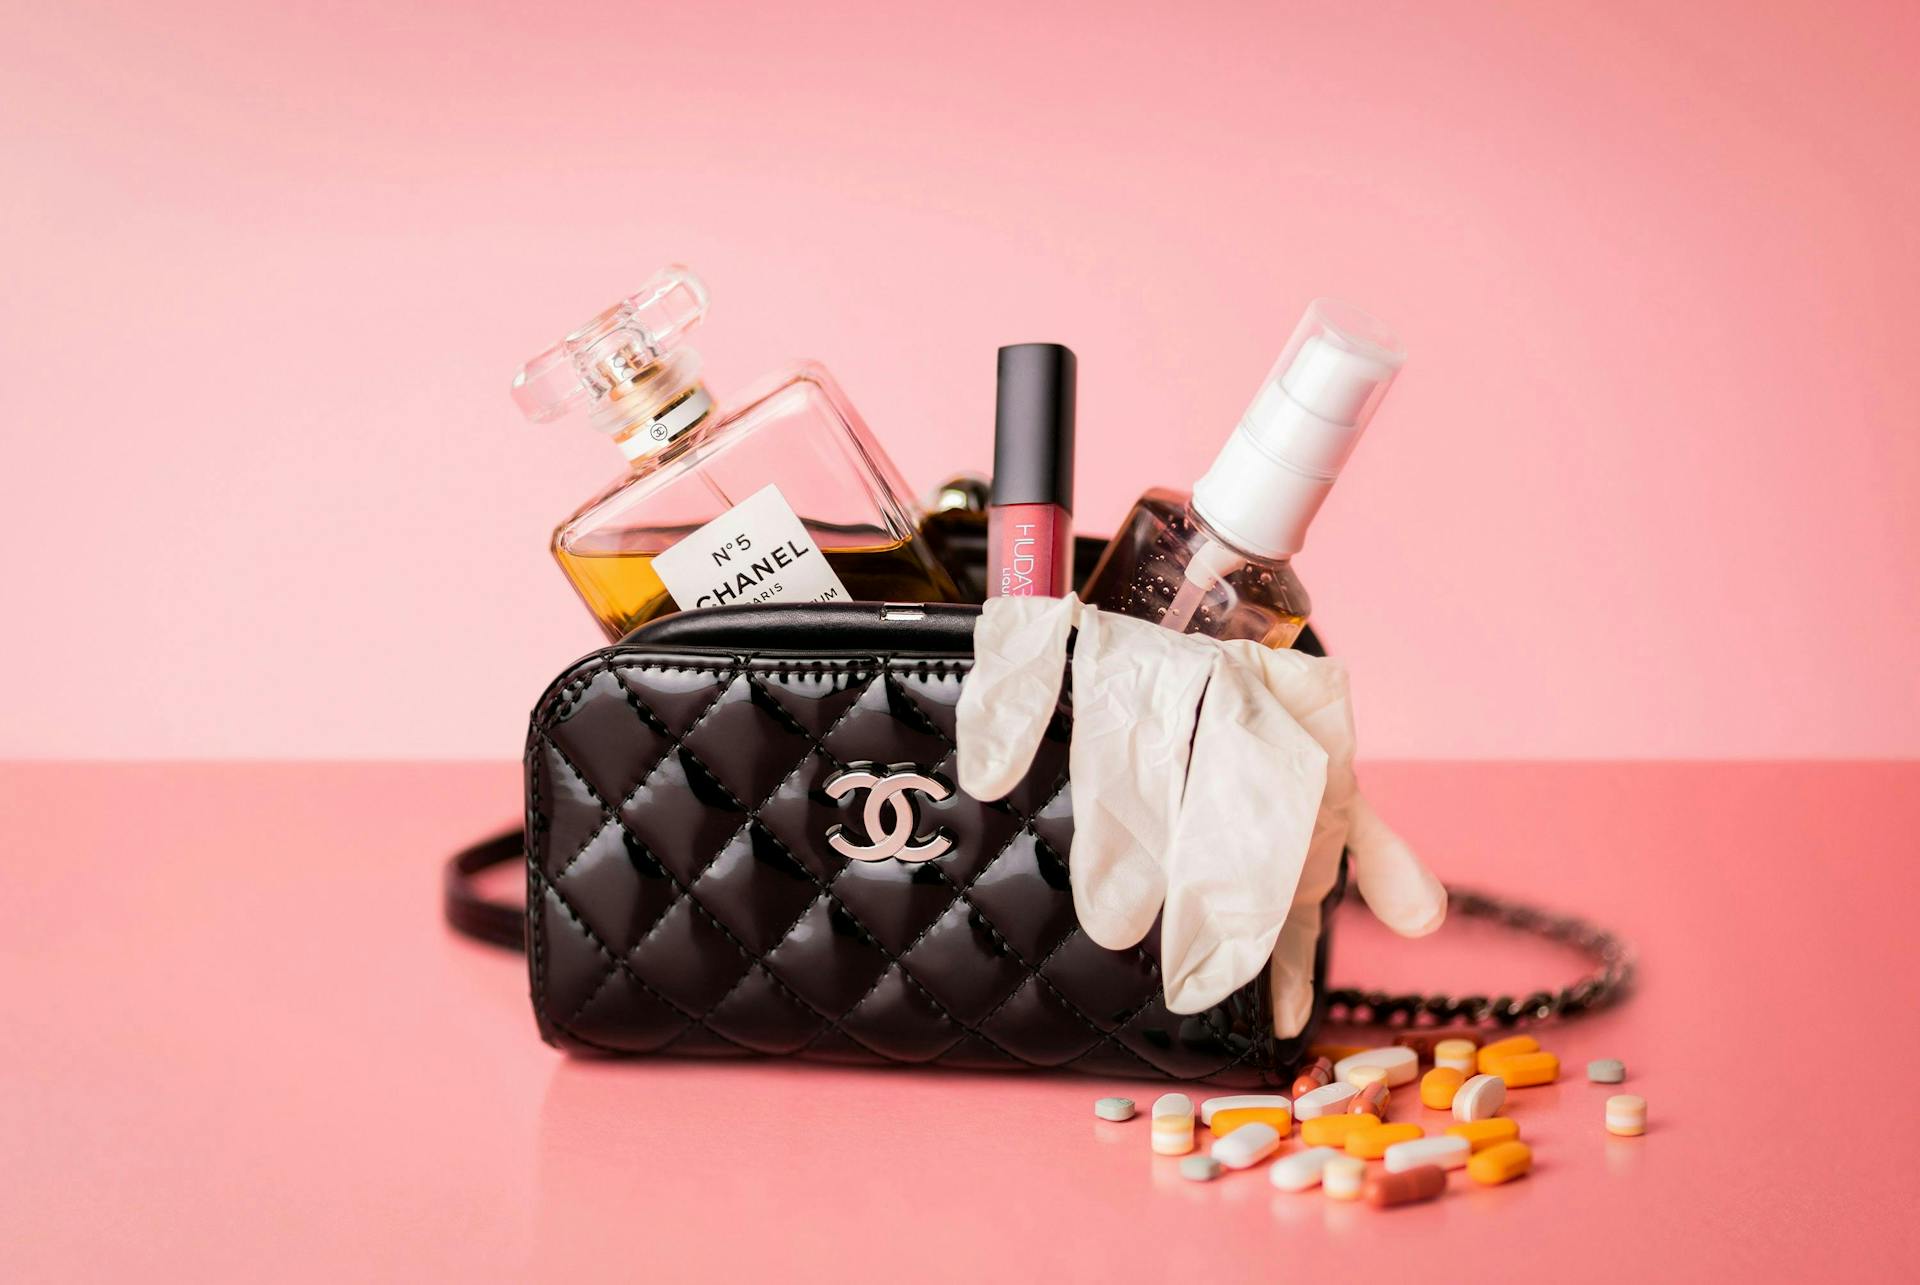 Een afbeelding van een chanel tas met verschillende chanel producten erin tegen een roze achtergrond. Chanel heeft een erg sterk corporate brand waardoor je, wanneer je aan chanel denkt, je meteen aan al deze producten denkt.